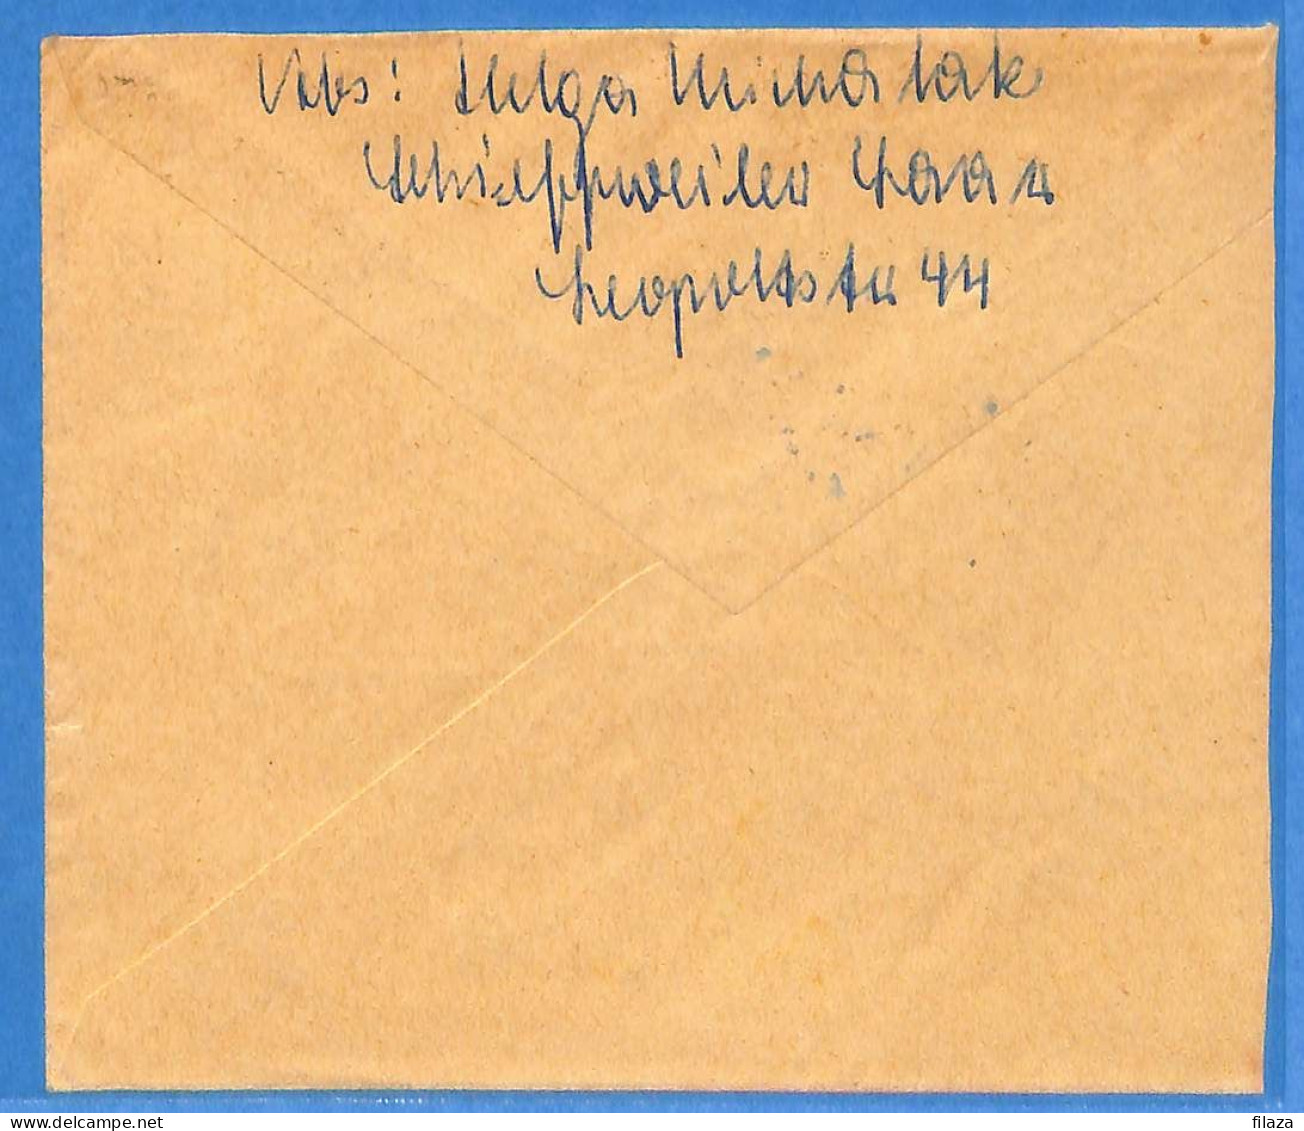 Saar - 1950 - Lettre De Saarbrücken - G31833 - Briefe U. Dokumente